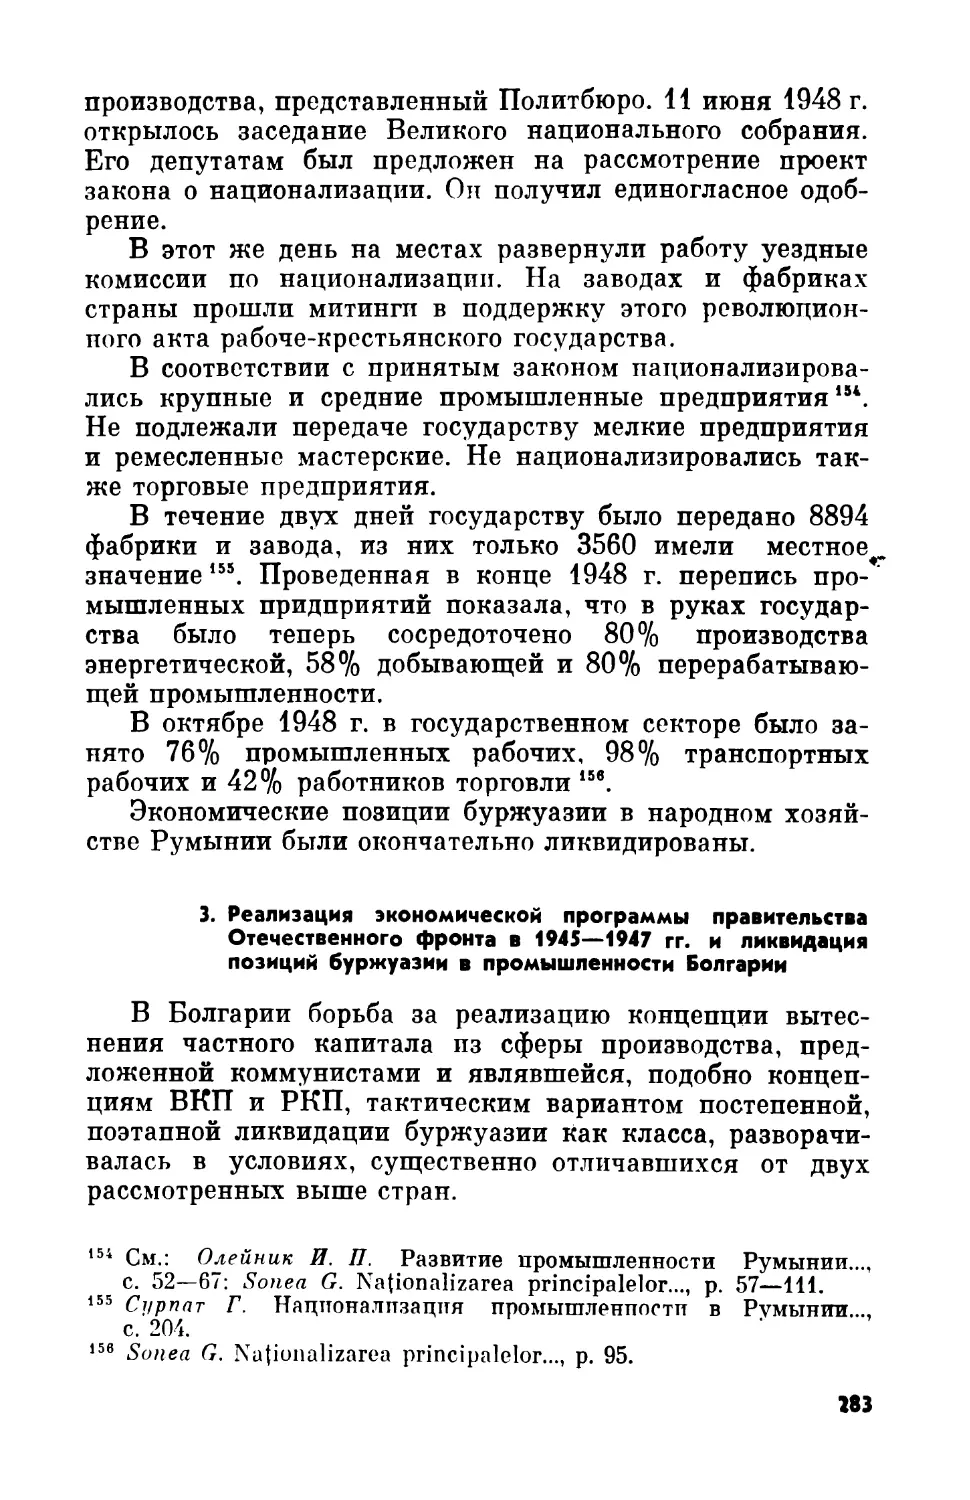 3. Реализация экономической программы правительства Отечественного фронта в 1945—1947 гг. и ликвидация позиций буржуазии в промышленности Болгарии